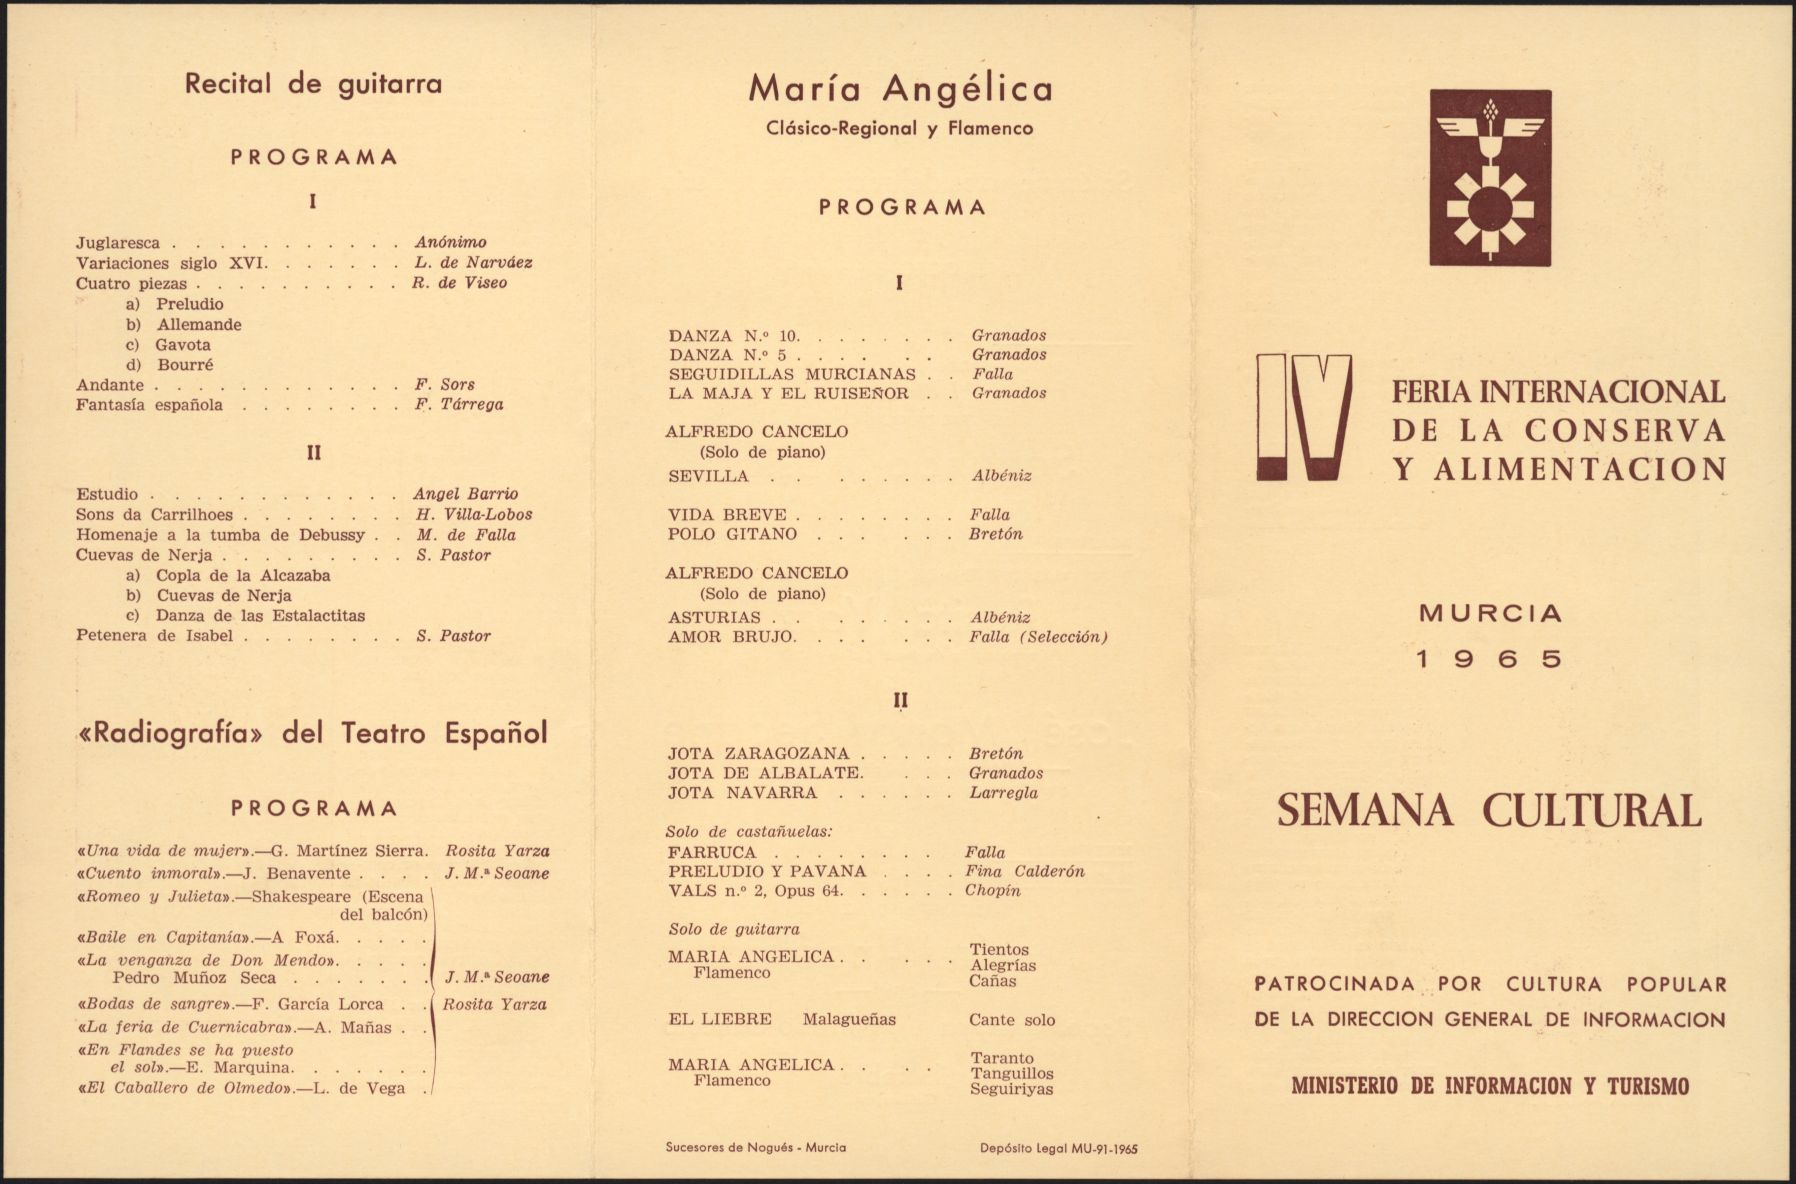 Folletos, invitaciones y banderolas de la IV Feria Internacional de la Conserva y Alimentación. Año 1965.